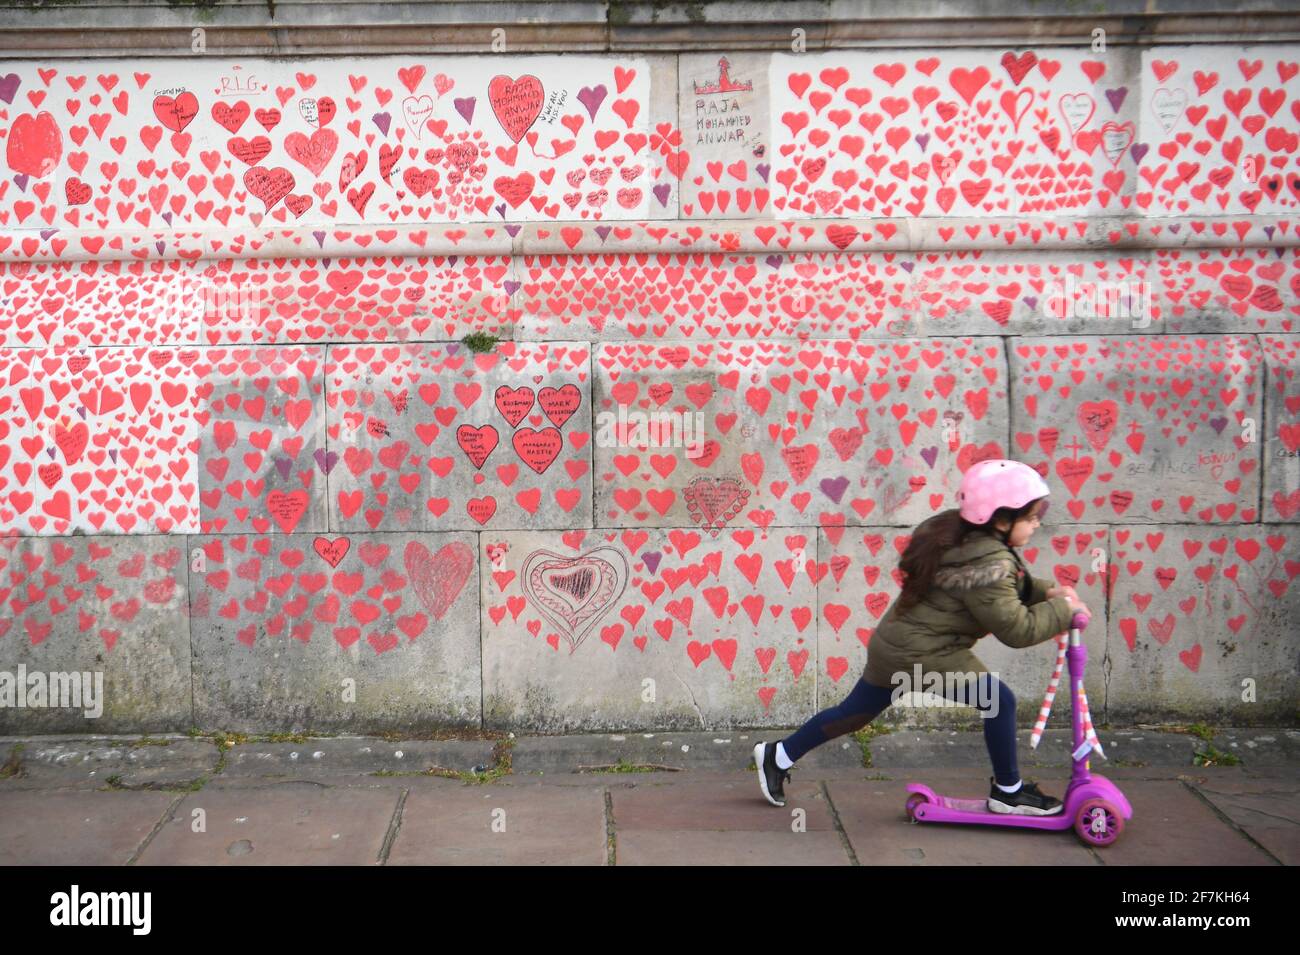 Une jeune fille passe un scooter à côté du mur commémoratif national de Covid sur le remblai de Londres. Plus d'un millier de personnes, y compris les privés, le personnel du NHS, les bénévoles et les membres du public, ont peint 150,000 coeurs sur le mur, qui s'étend maintenant sur environ un demi-kilomètre, pour représenter les proches perdus à cause du virus au Royaume-Uni. Date de la photo : jeudi 8 avril 2021. Banque D'Images